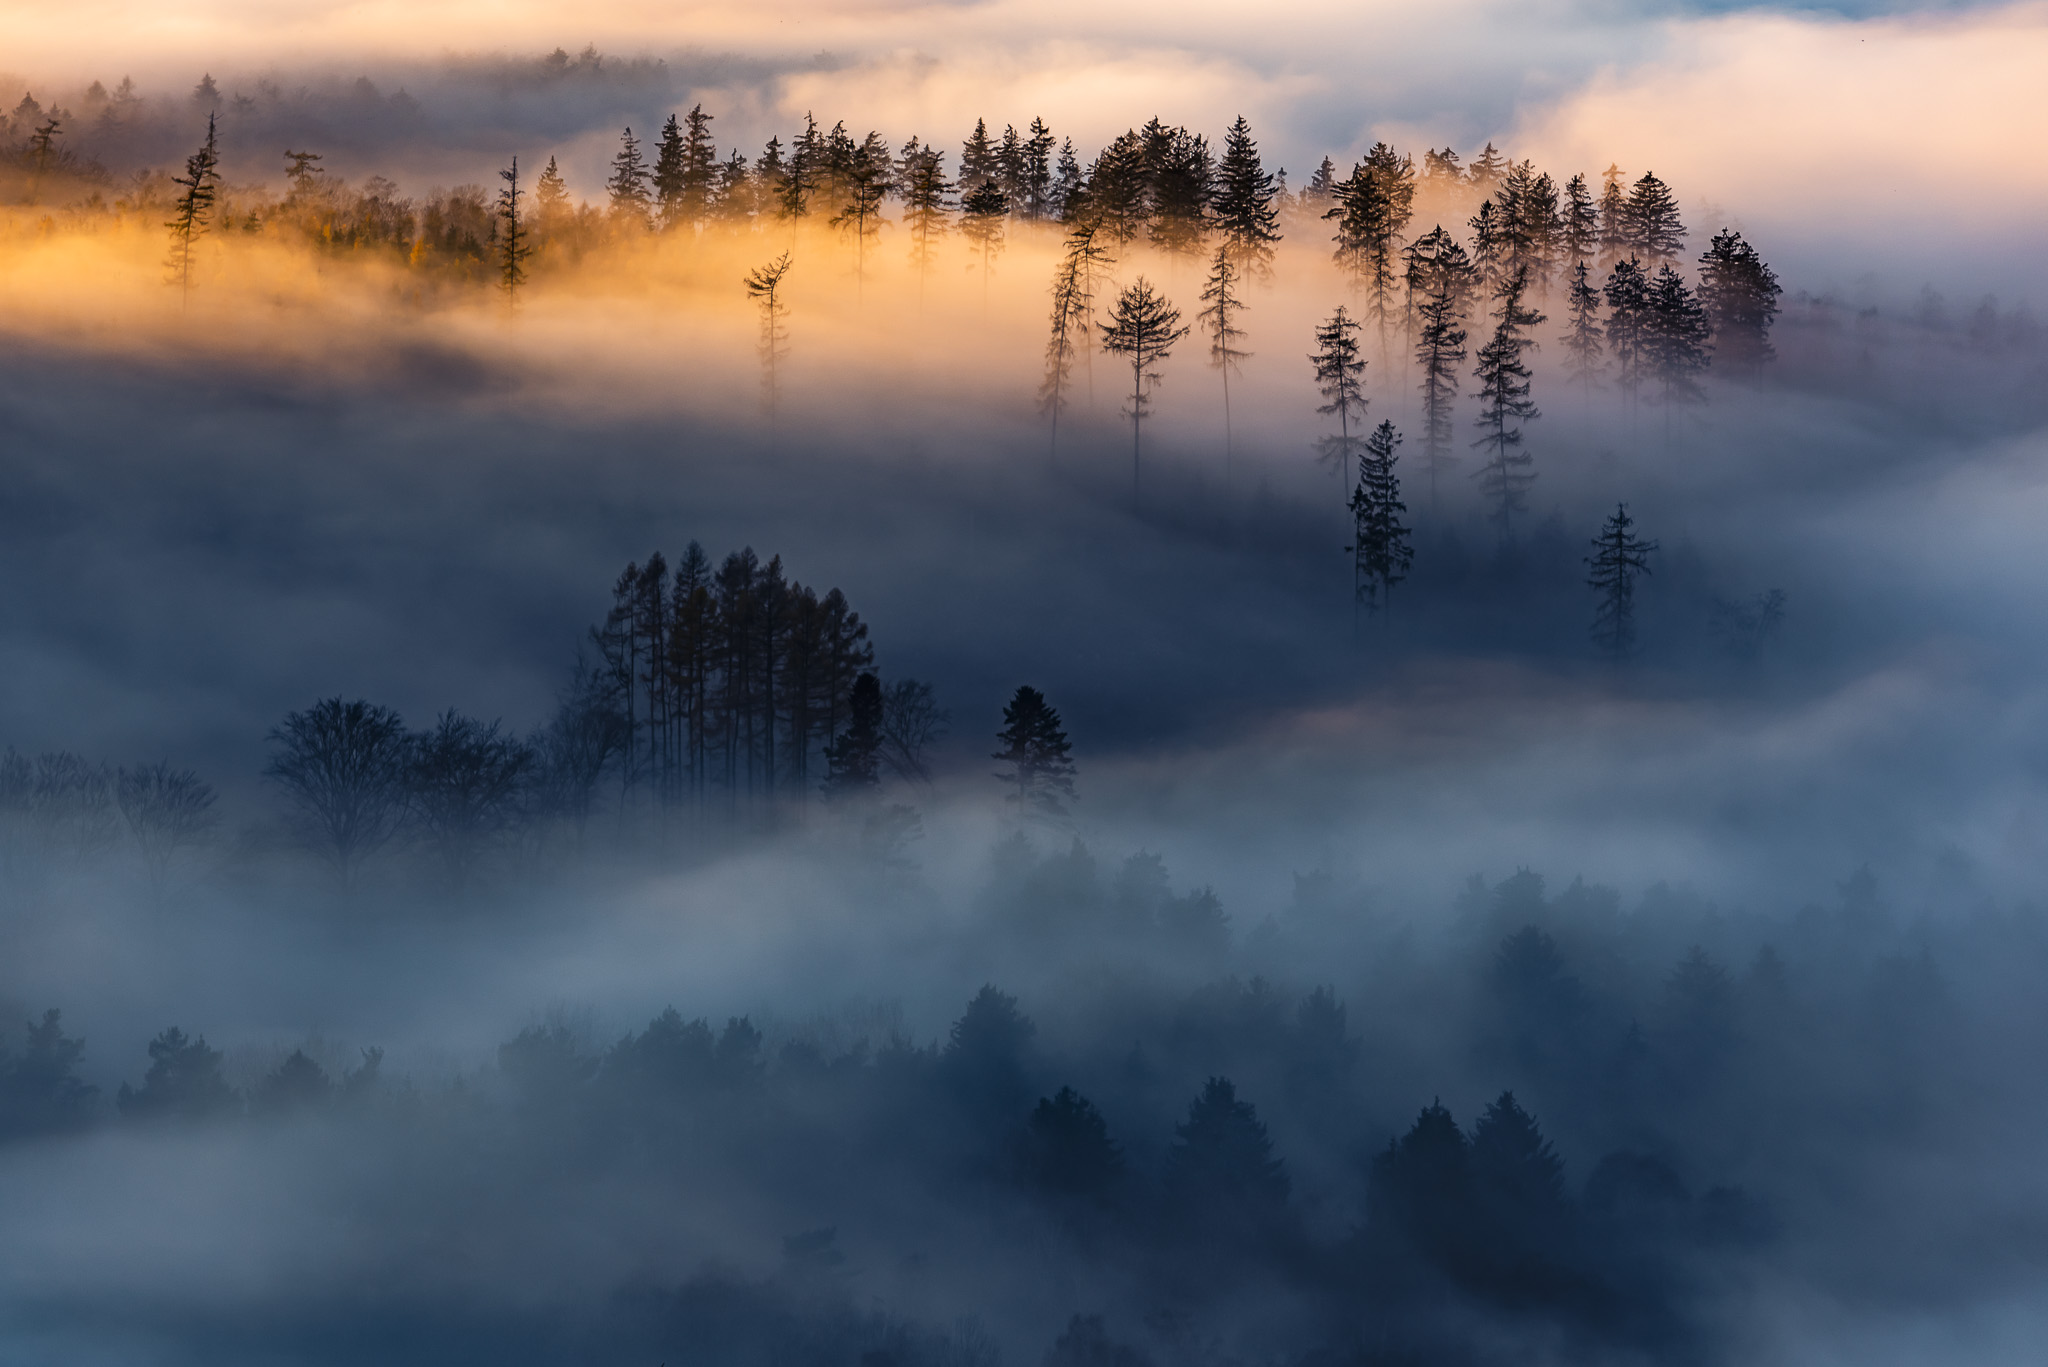 Landschaft in Taunus mit Wald im Nebel angestrahlt durch Streiflicht der untergehende Sonne.